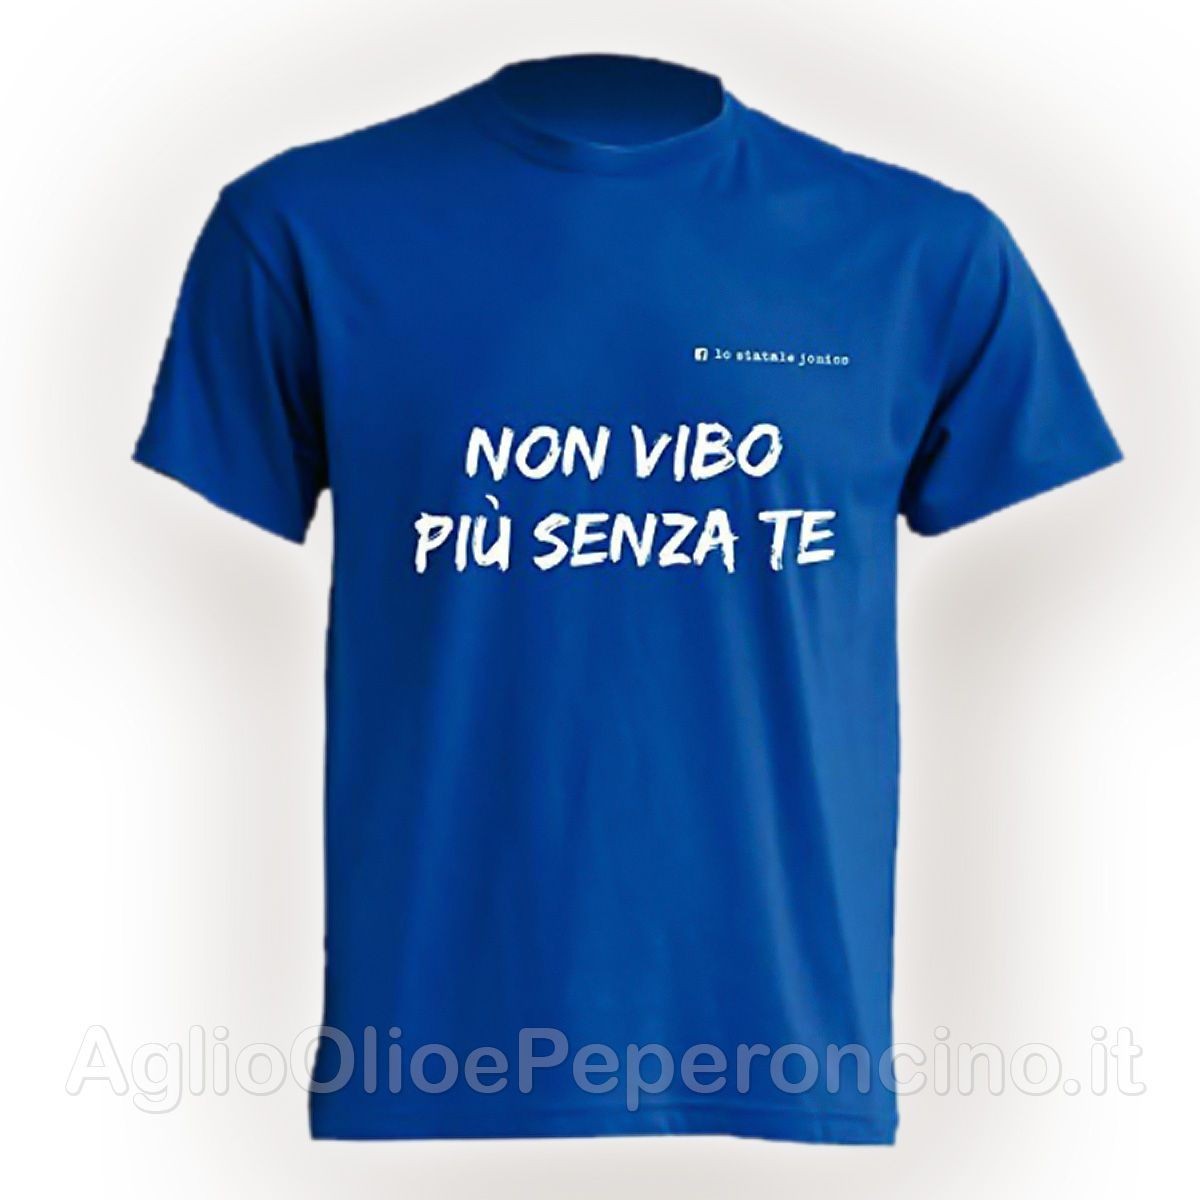 T-Shirt - Non Vibo più senza te - By Lo Statale Jonico